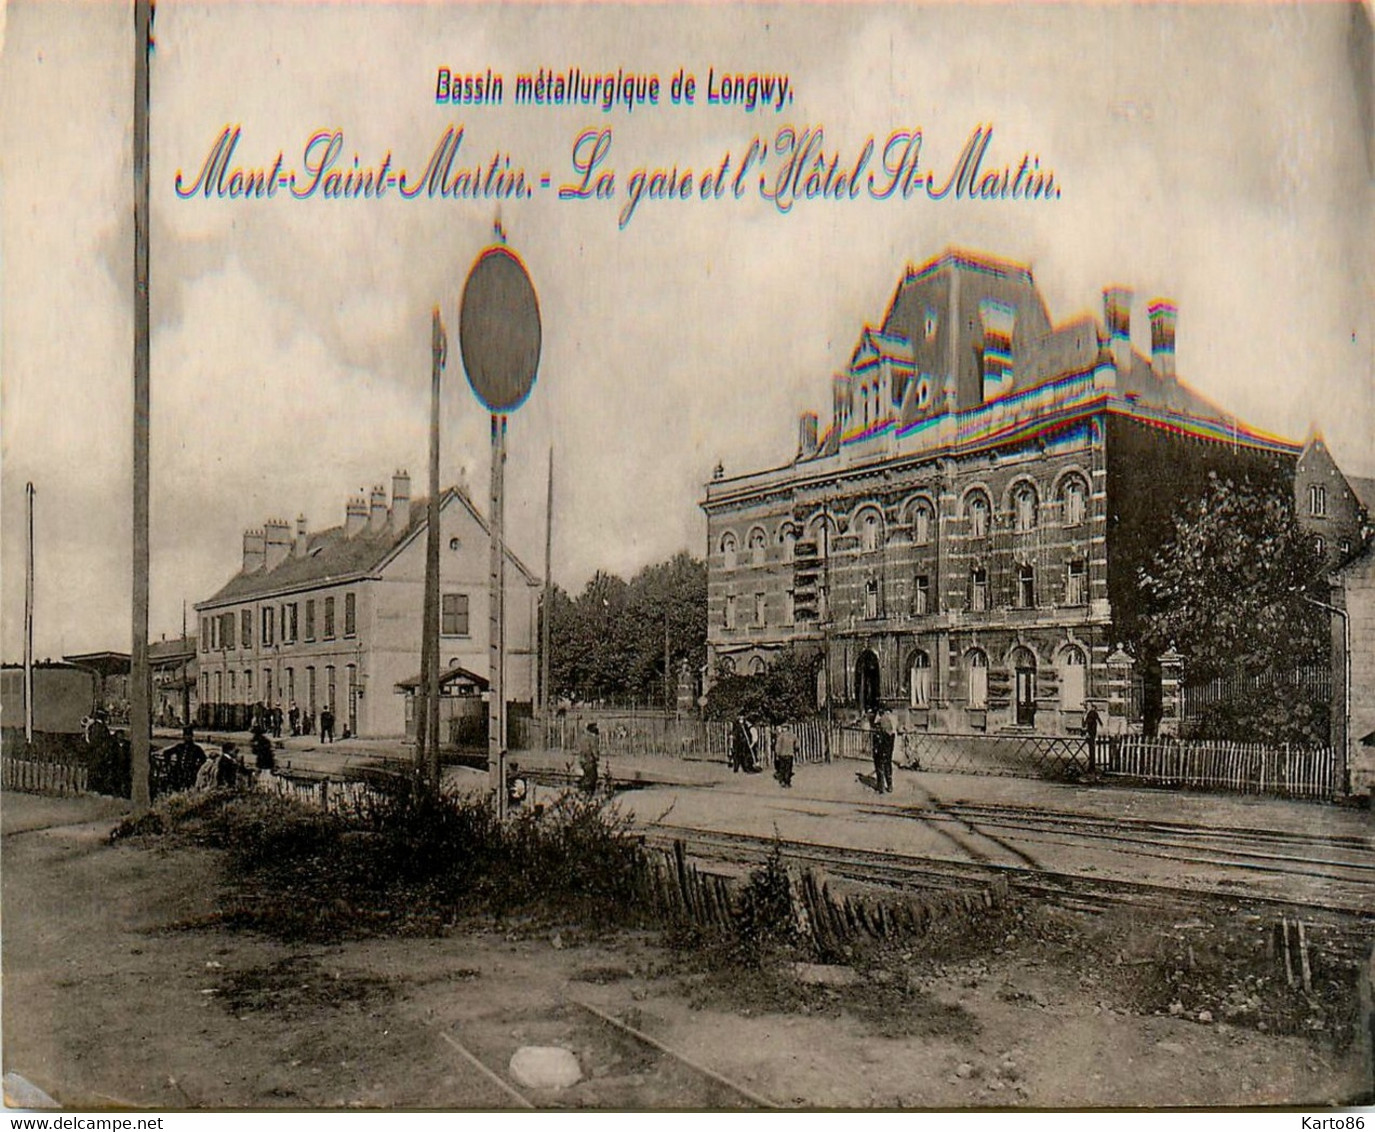 Mont St Martin * La Gare Et L'hôtel St Martin * Bassin Métallurgique De Longwy * Ligne Chemin De Fer - Mont Saint Martin